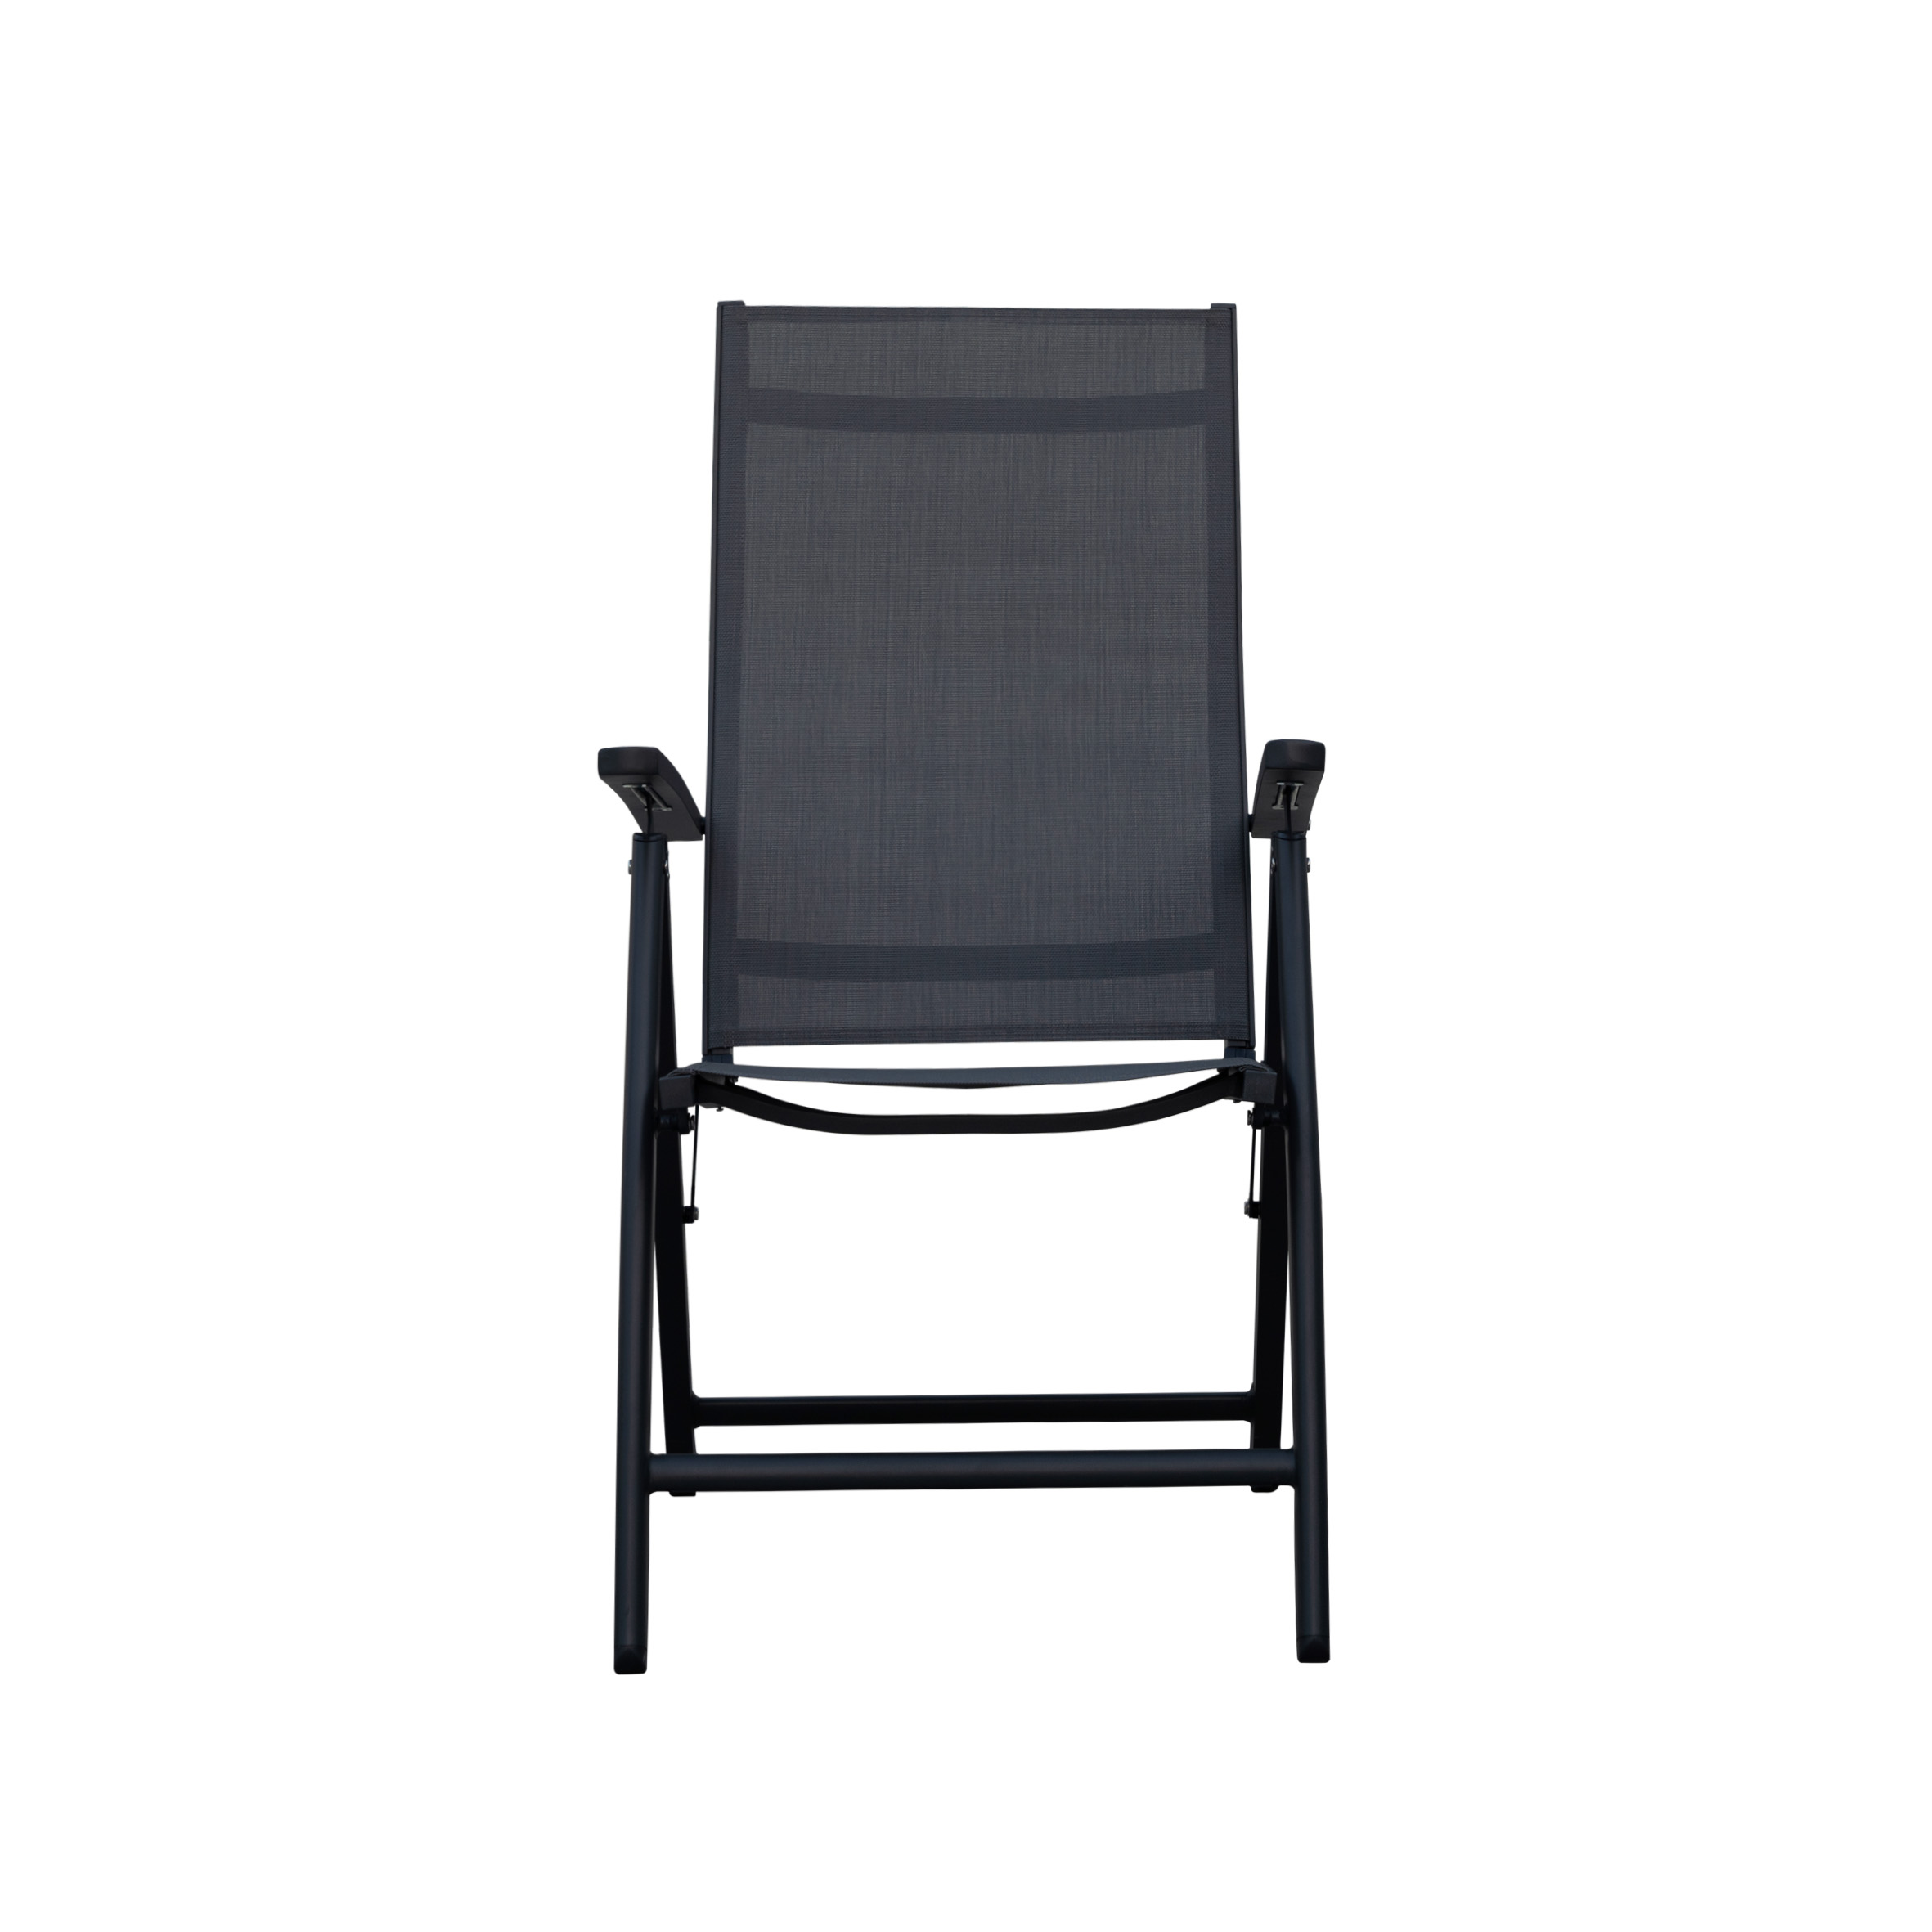 Smart textile folding chair S2